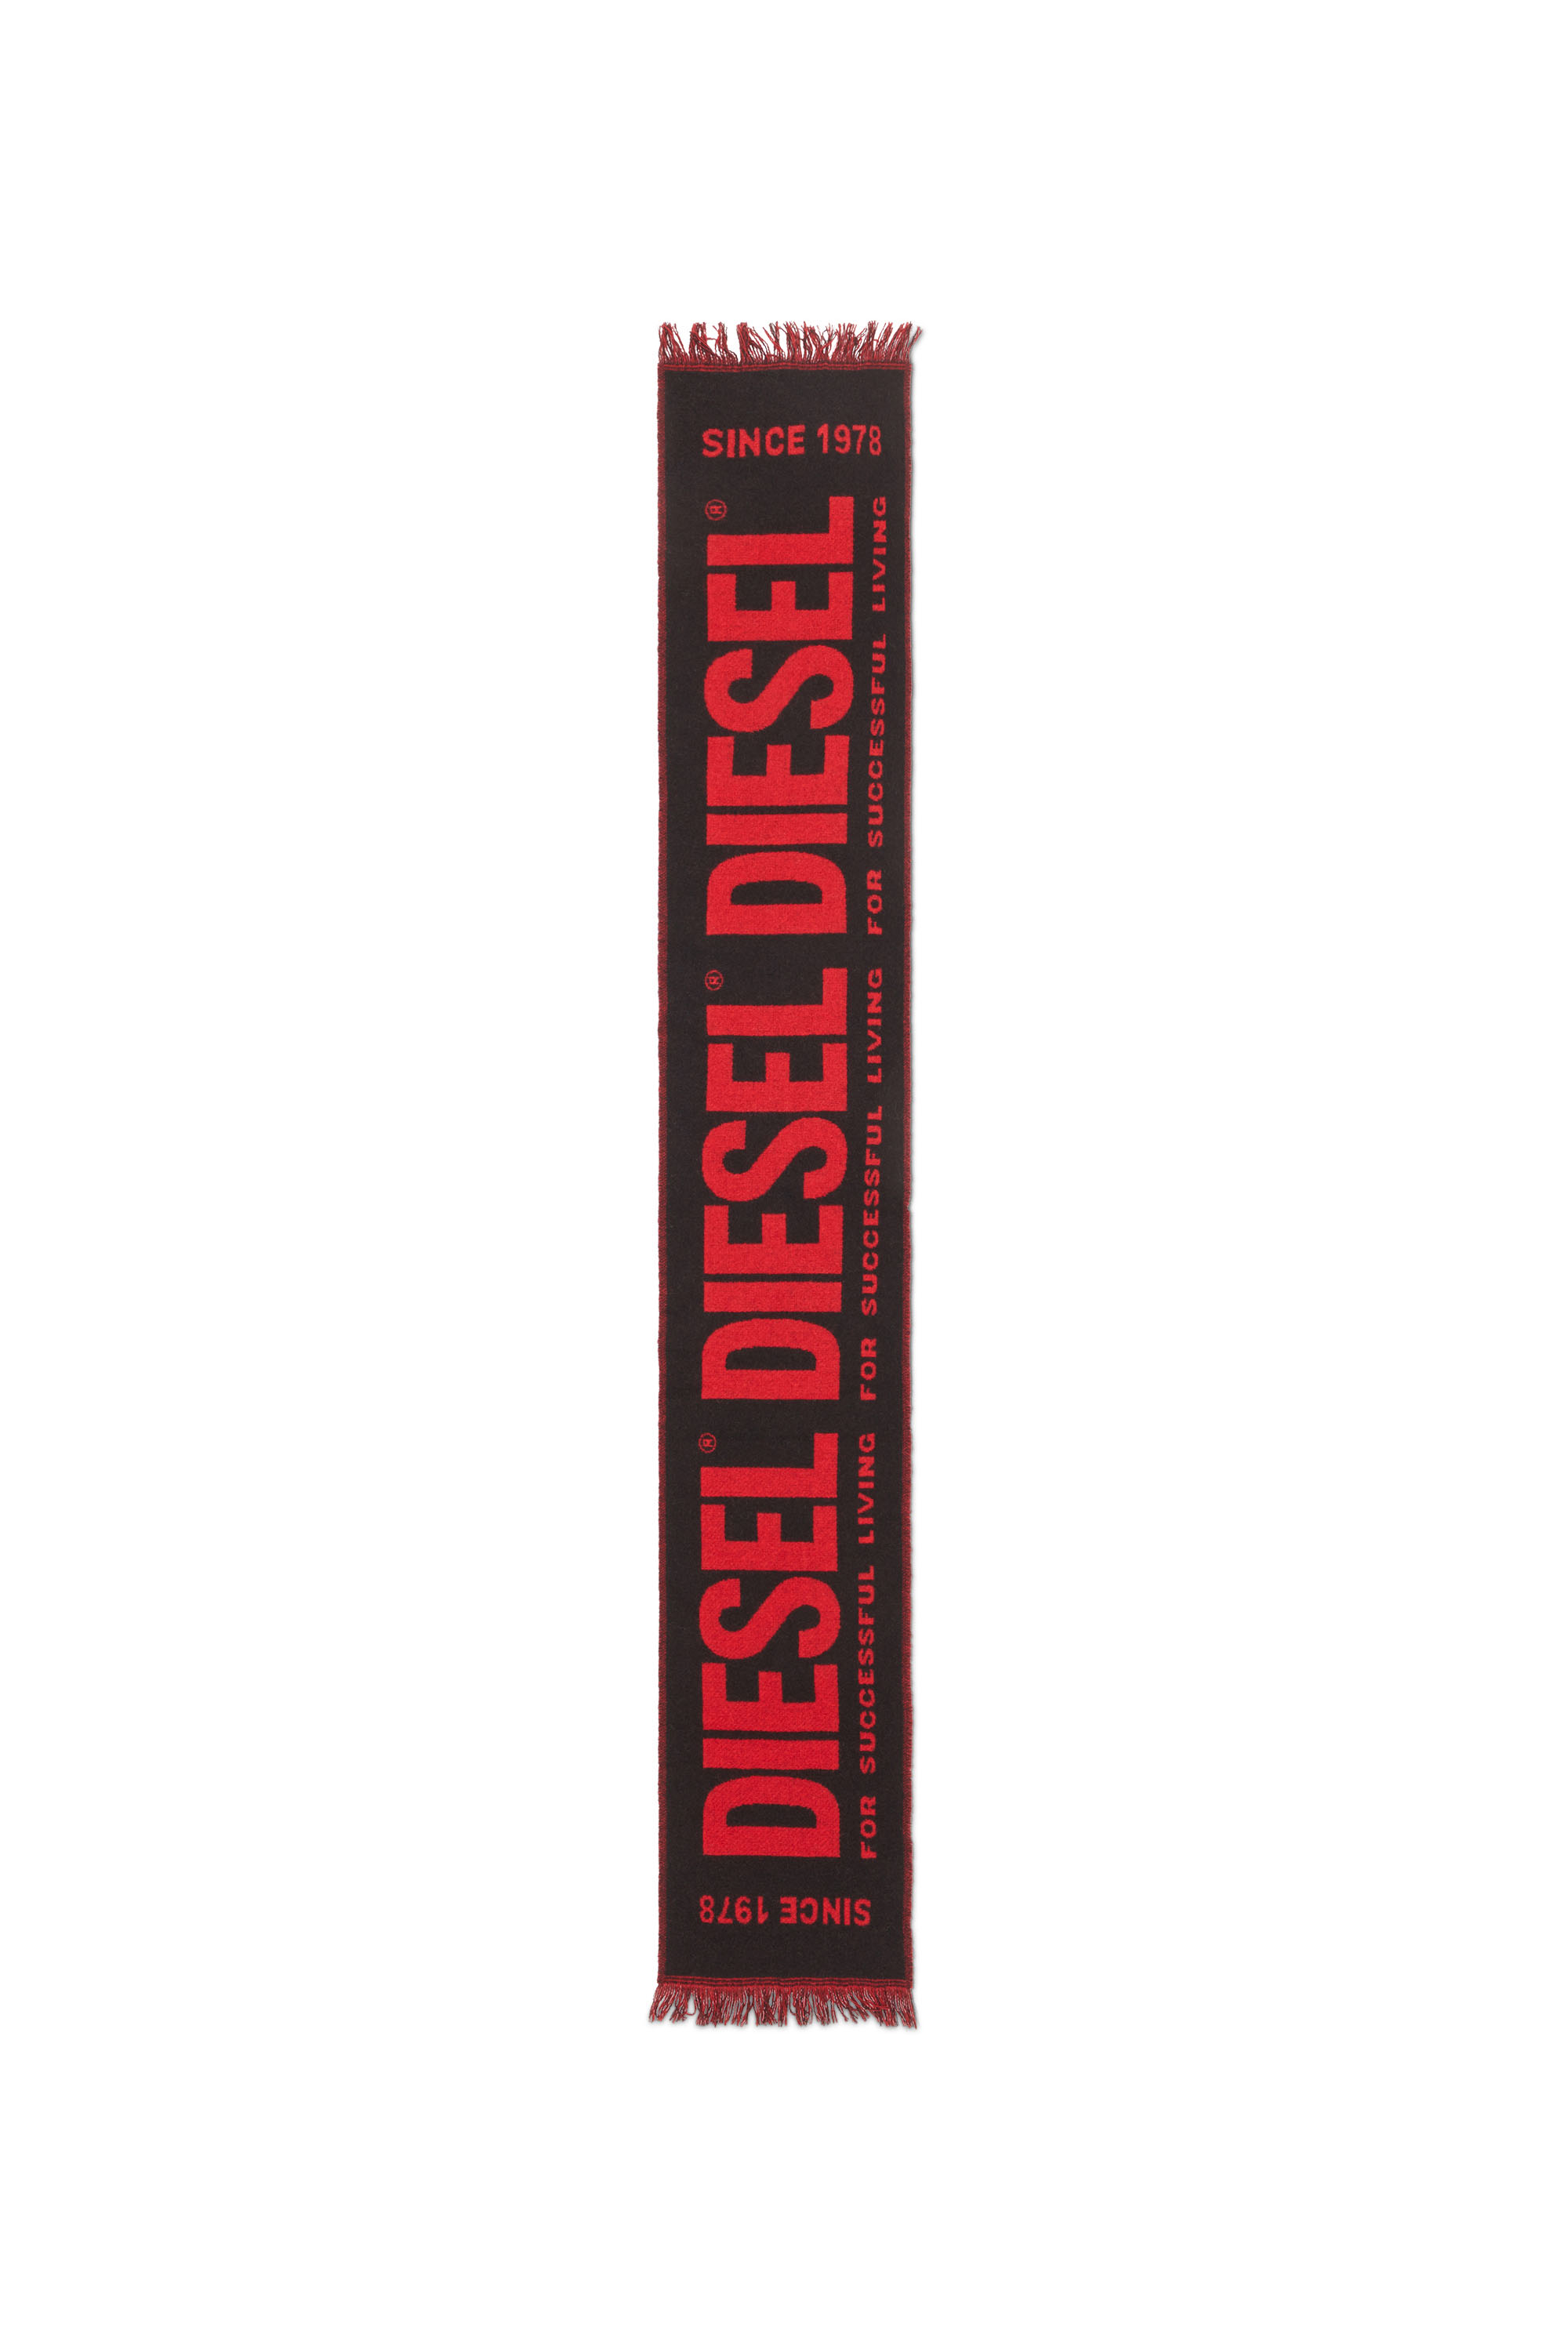 Diesel - S-BISC-NEW, Black/Red - Image 2